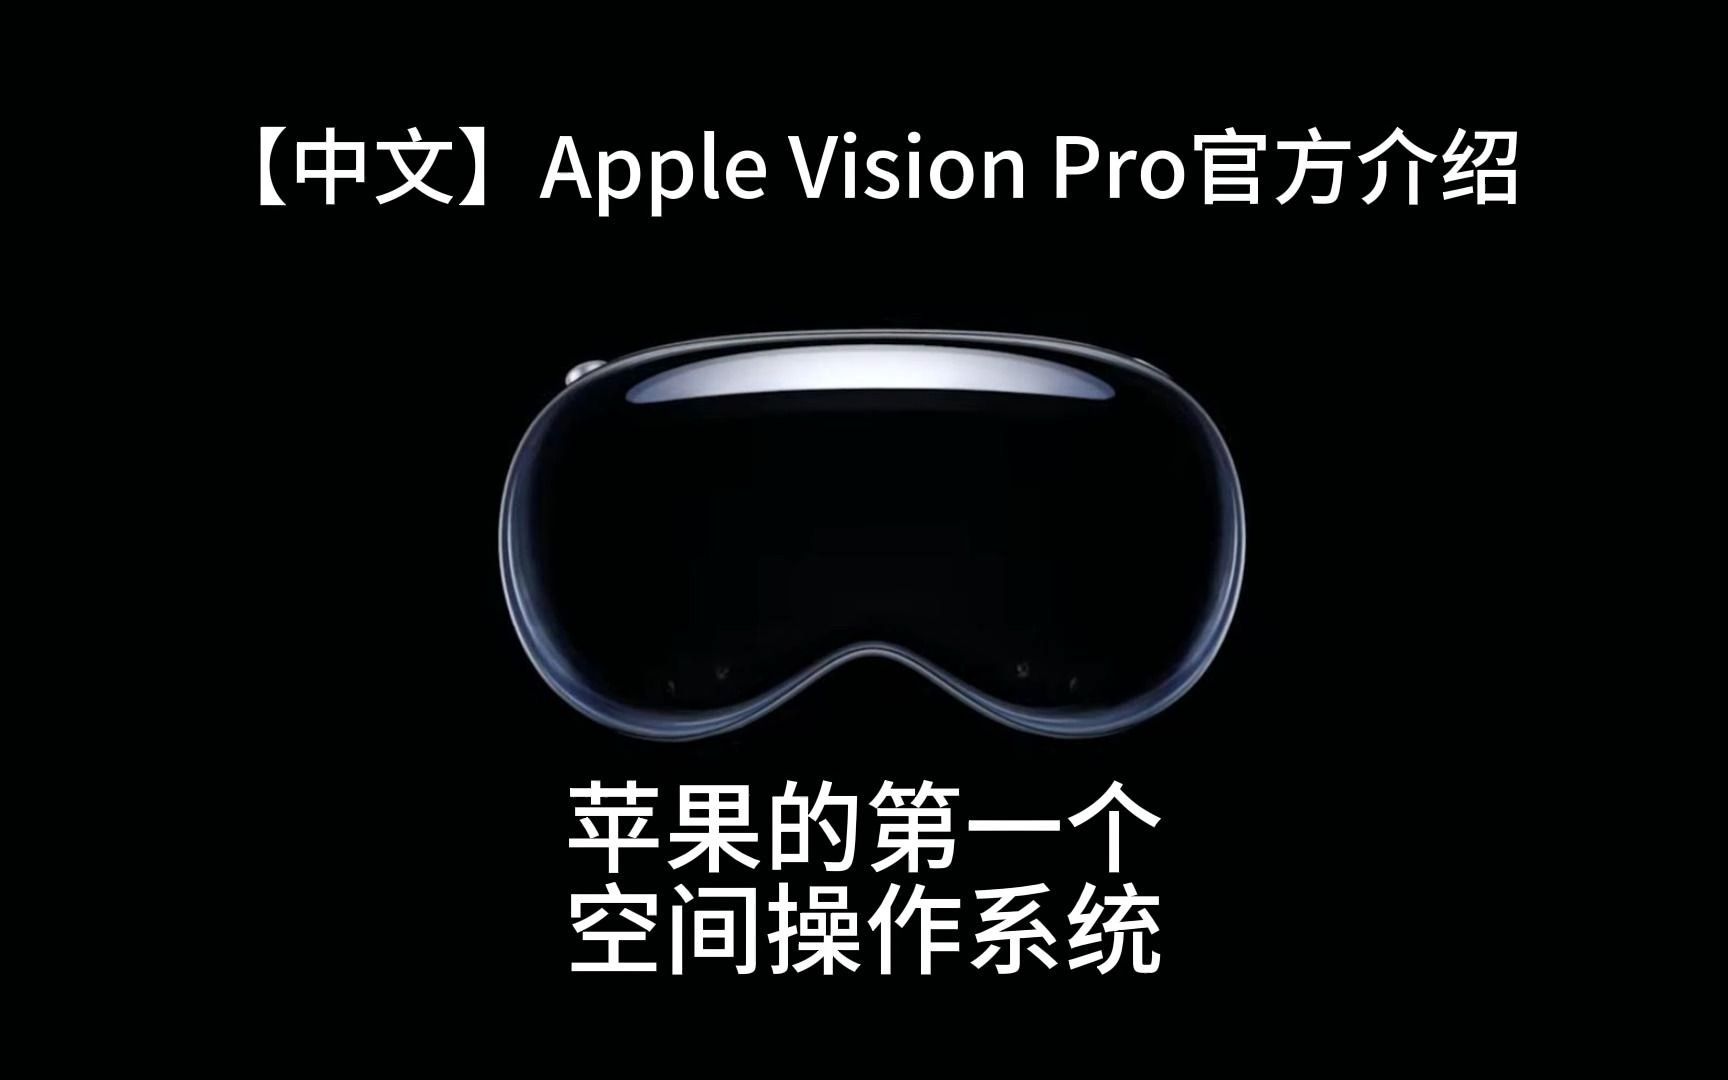 【中文完整版】Apple Vision Pro 官方介绍影片！